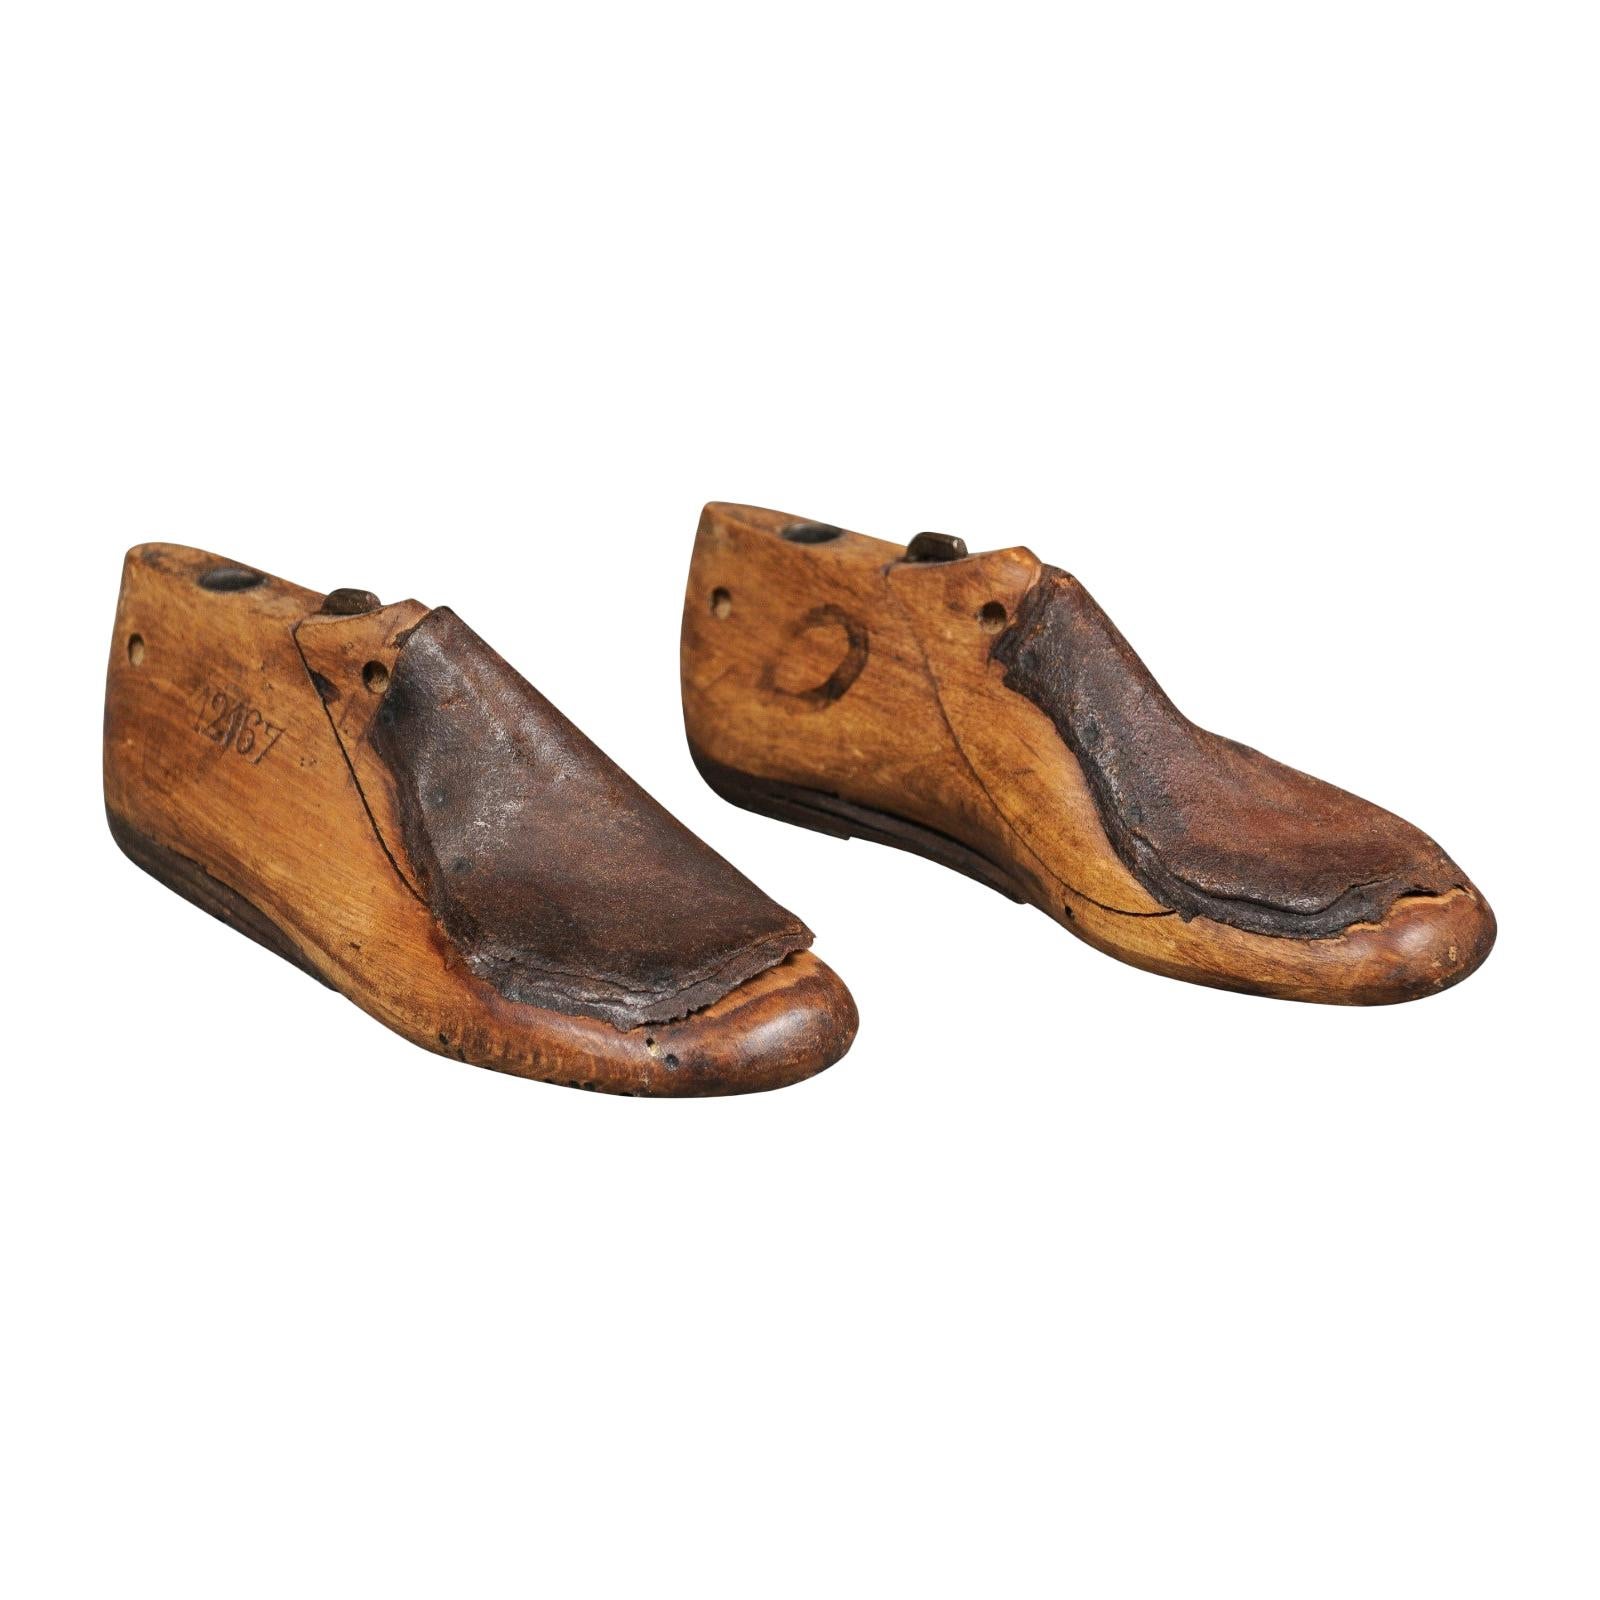 Childrens Wood Wooden 1 Pair SIZE 4.5 D Dress Shoe Lasts Molds Cobbler 3475 